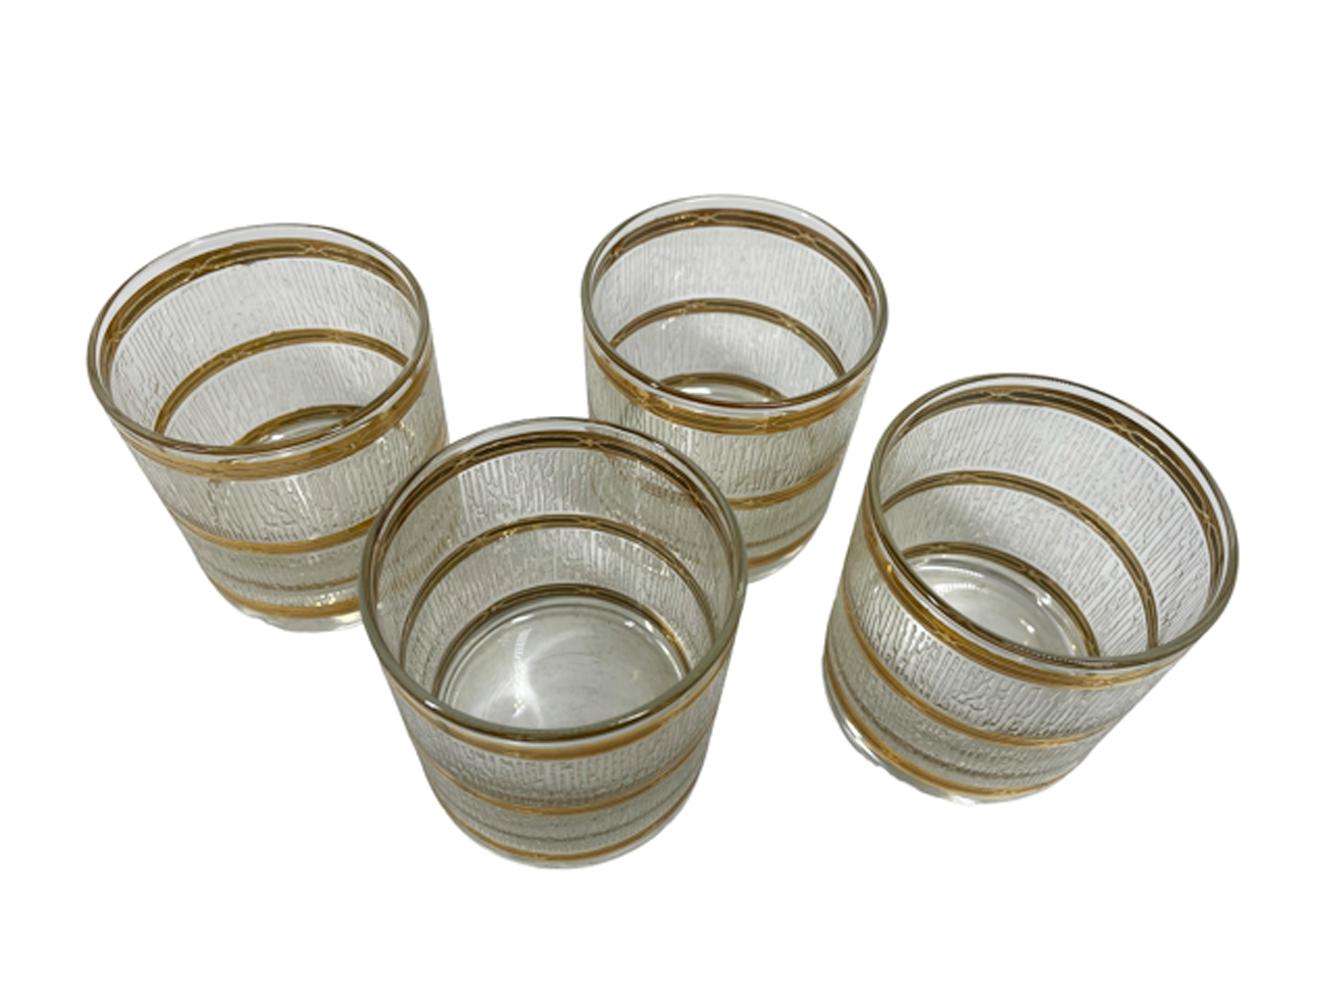 Vintage Culver LTD Gläser mit breiten Bändern aus erhabenen, strukturierten Bändern mit vertikalen Linien aus durchscheinenden weißen Eiszapfen zwischen 22-karätigen Goldbändern mit erhabenen Motiven. Diese sind eine schwer zu findende Größe, die